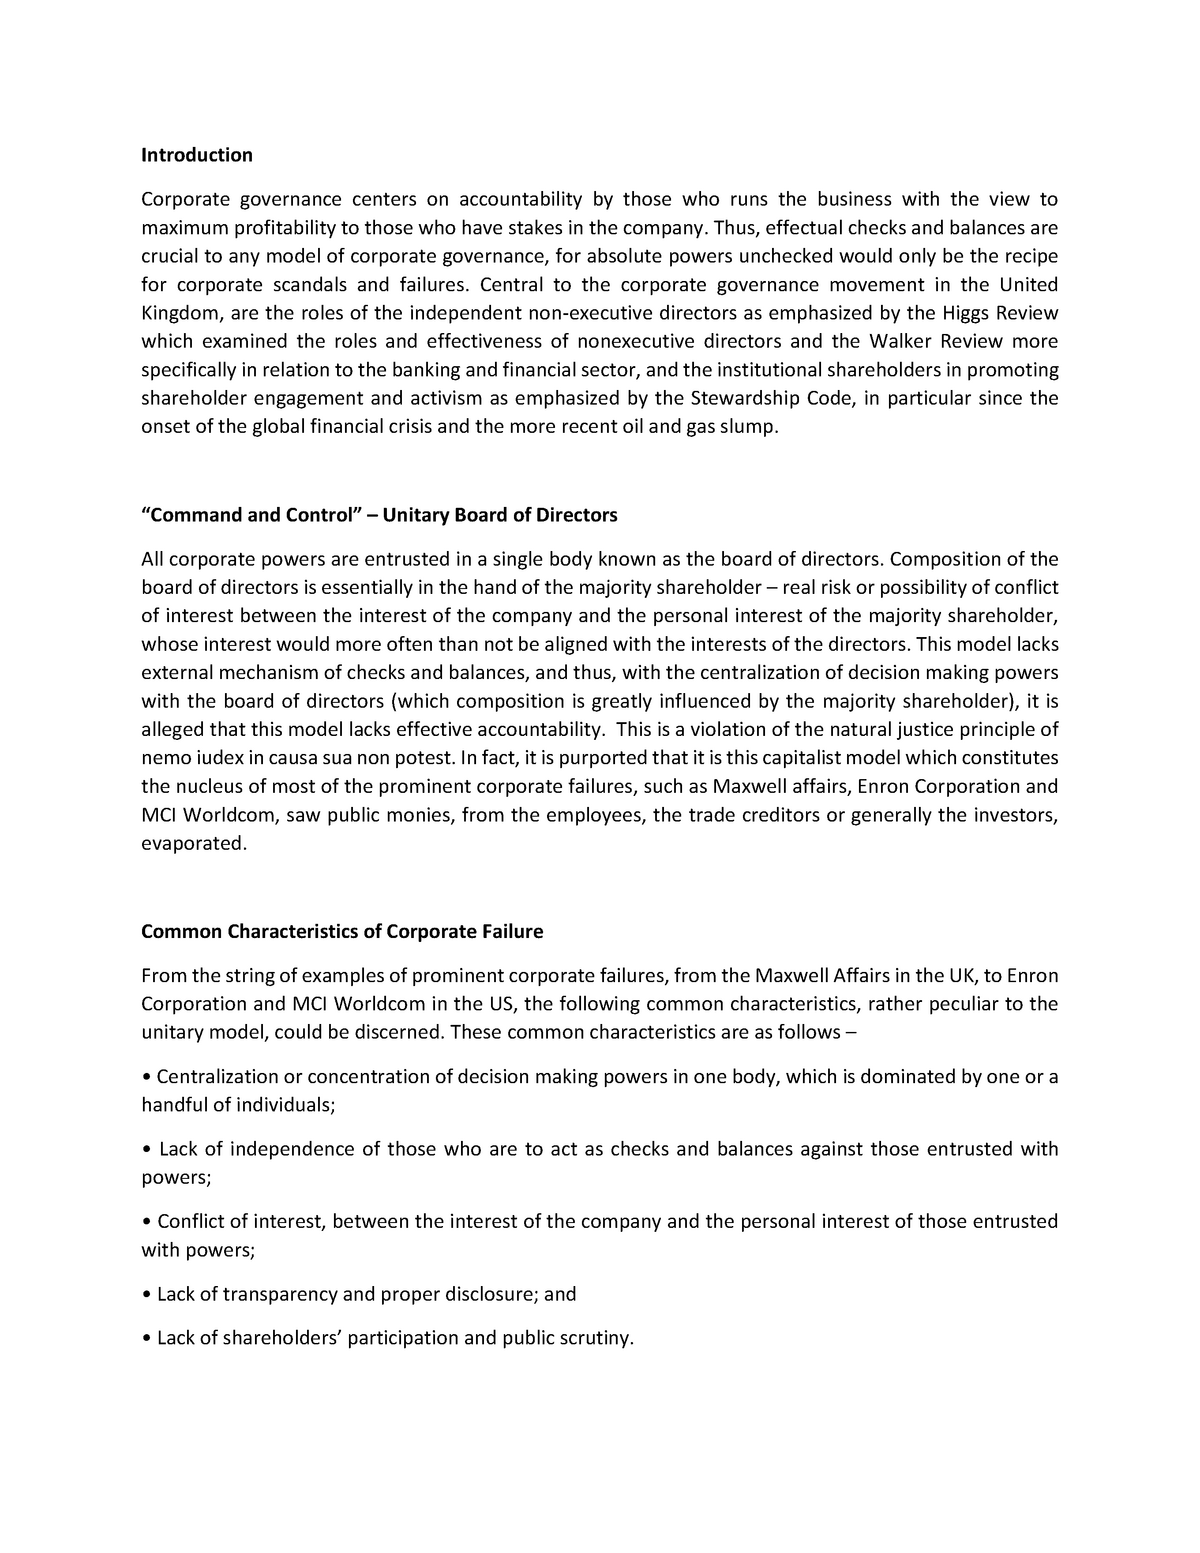 phd thesis on governance